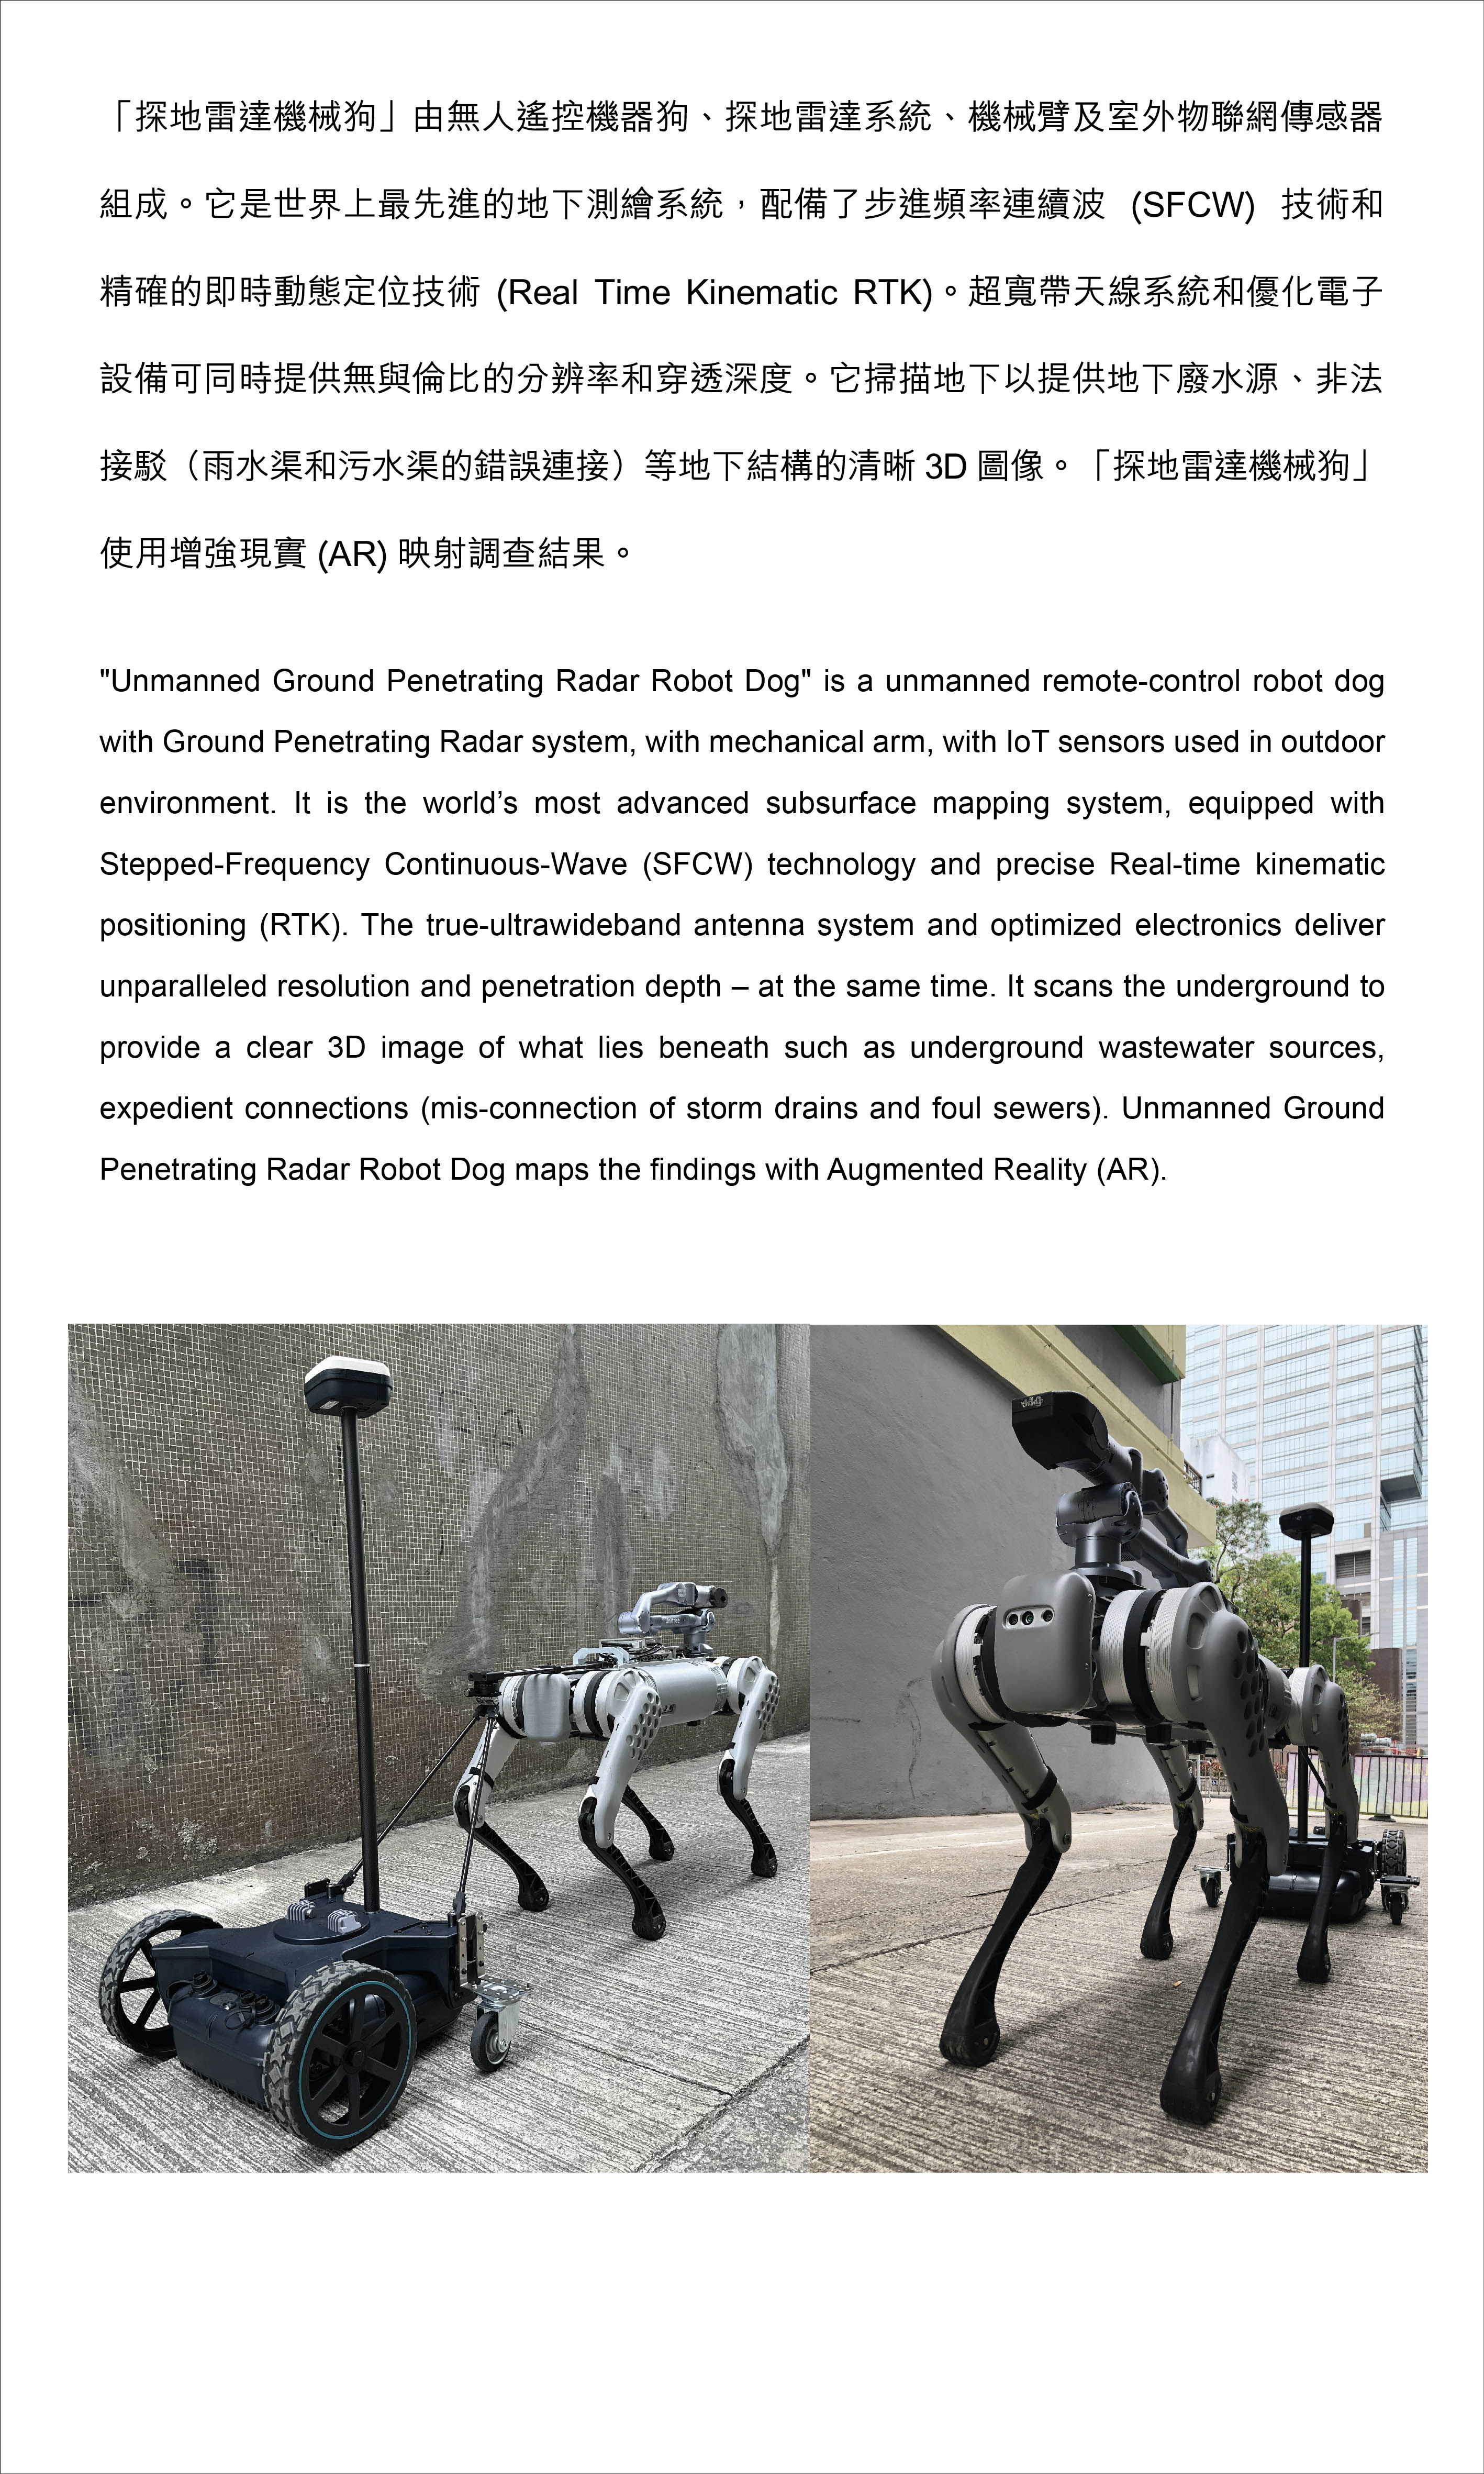 Unmanned Ground Penetrating Radar Robot Dog